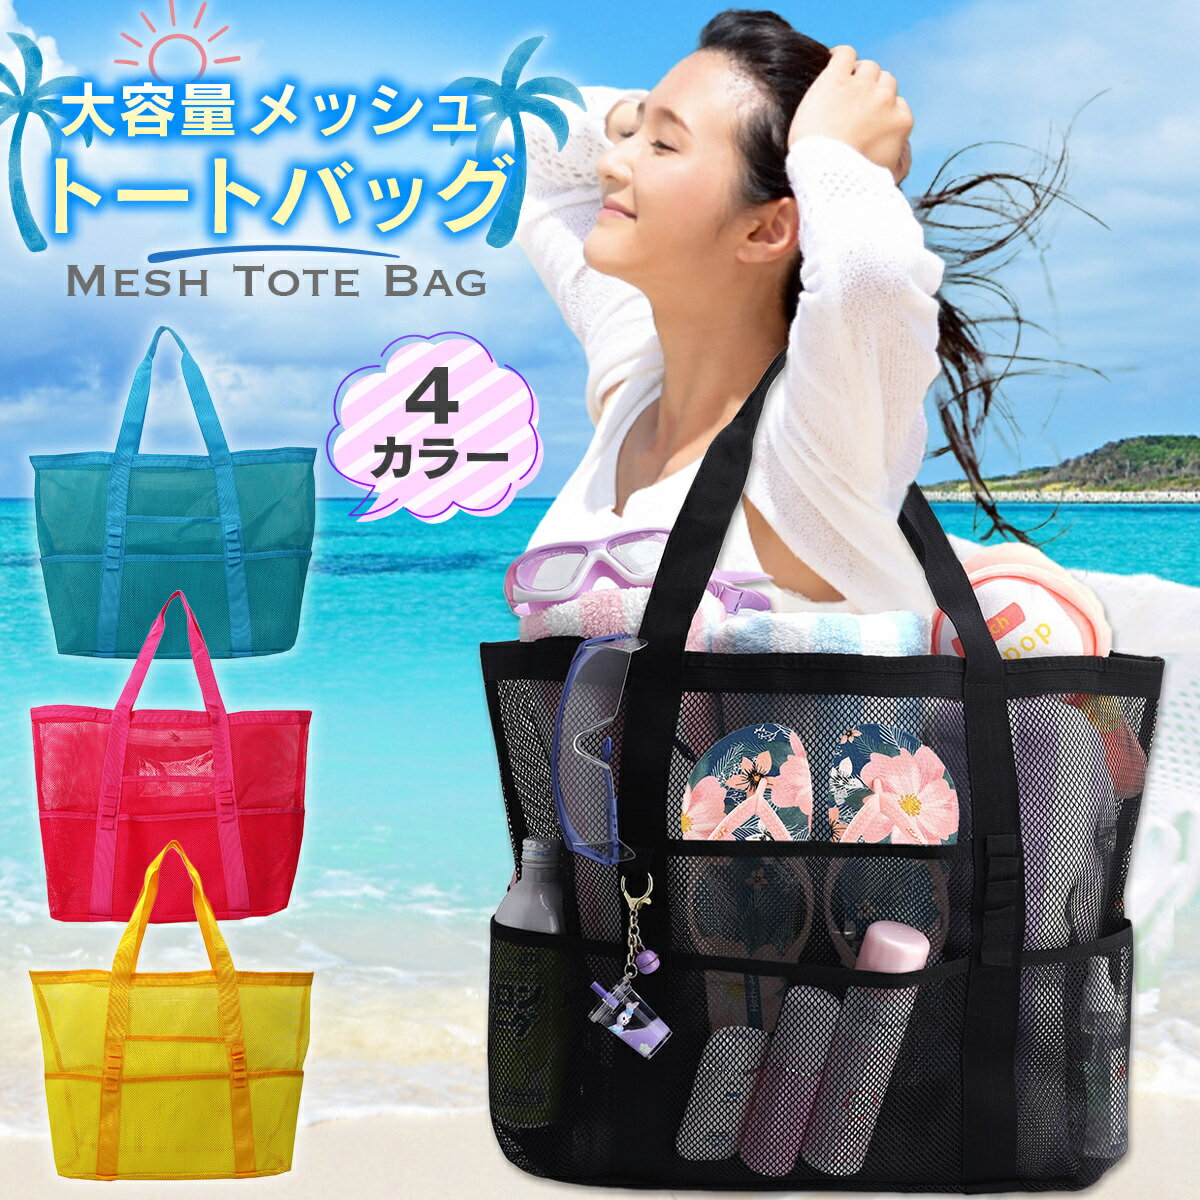 【海・プール】メッシュ素材で濡れても安心なビーチバッグのおすすめを教えて！